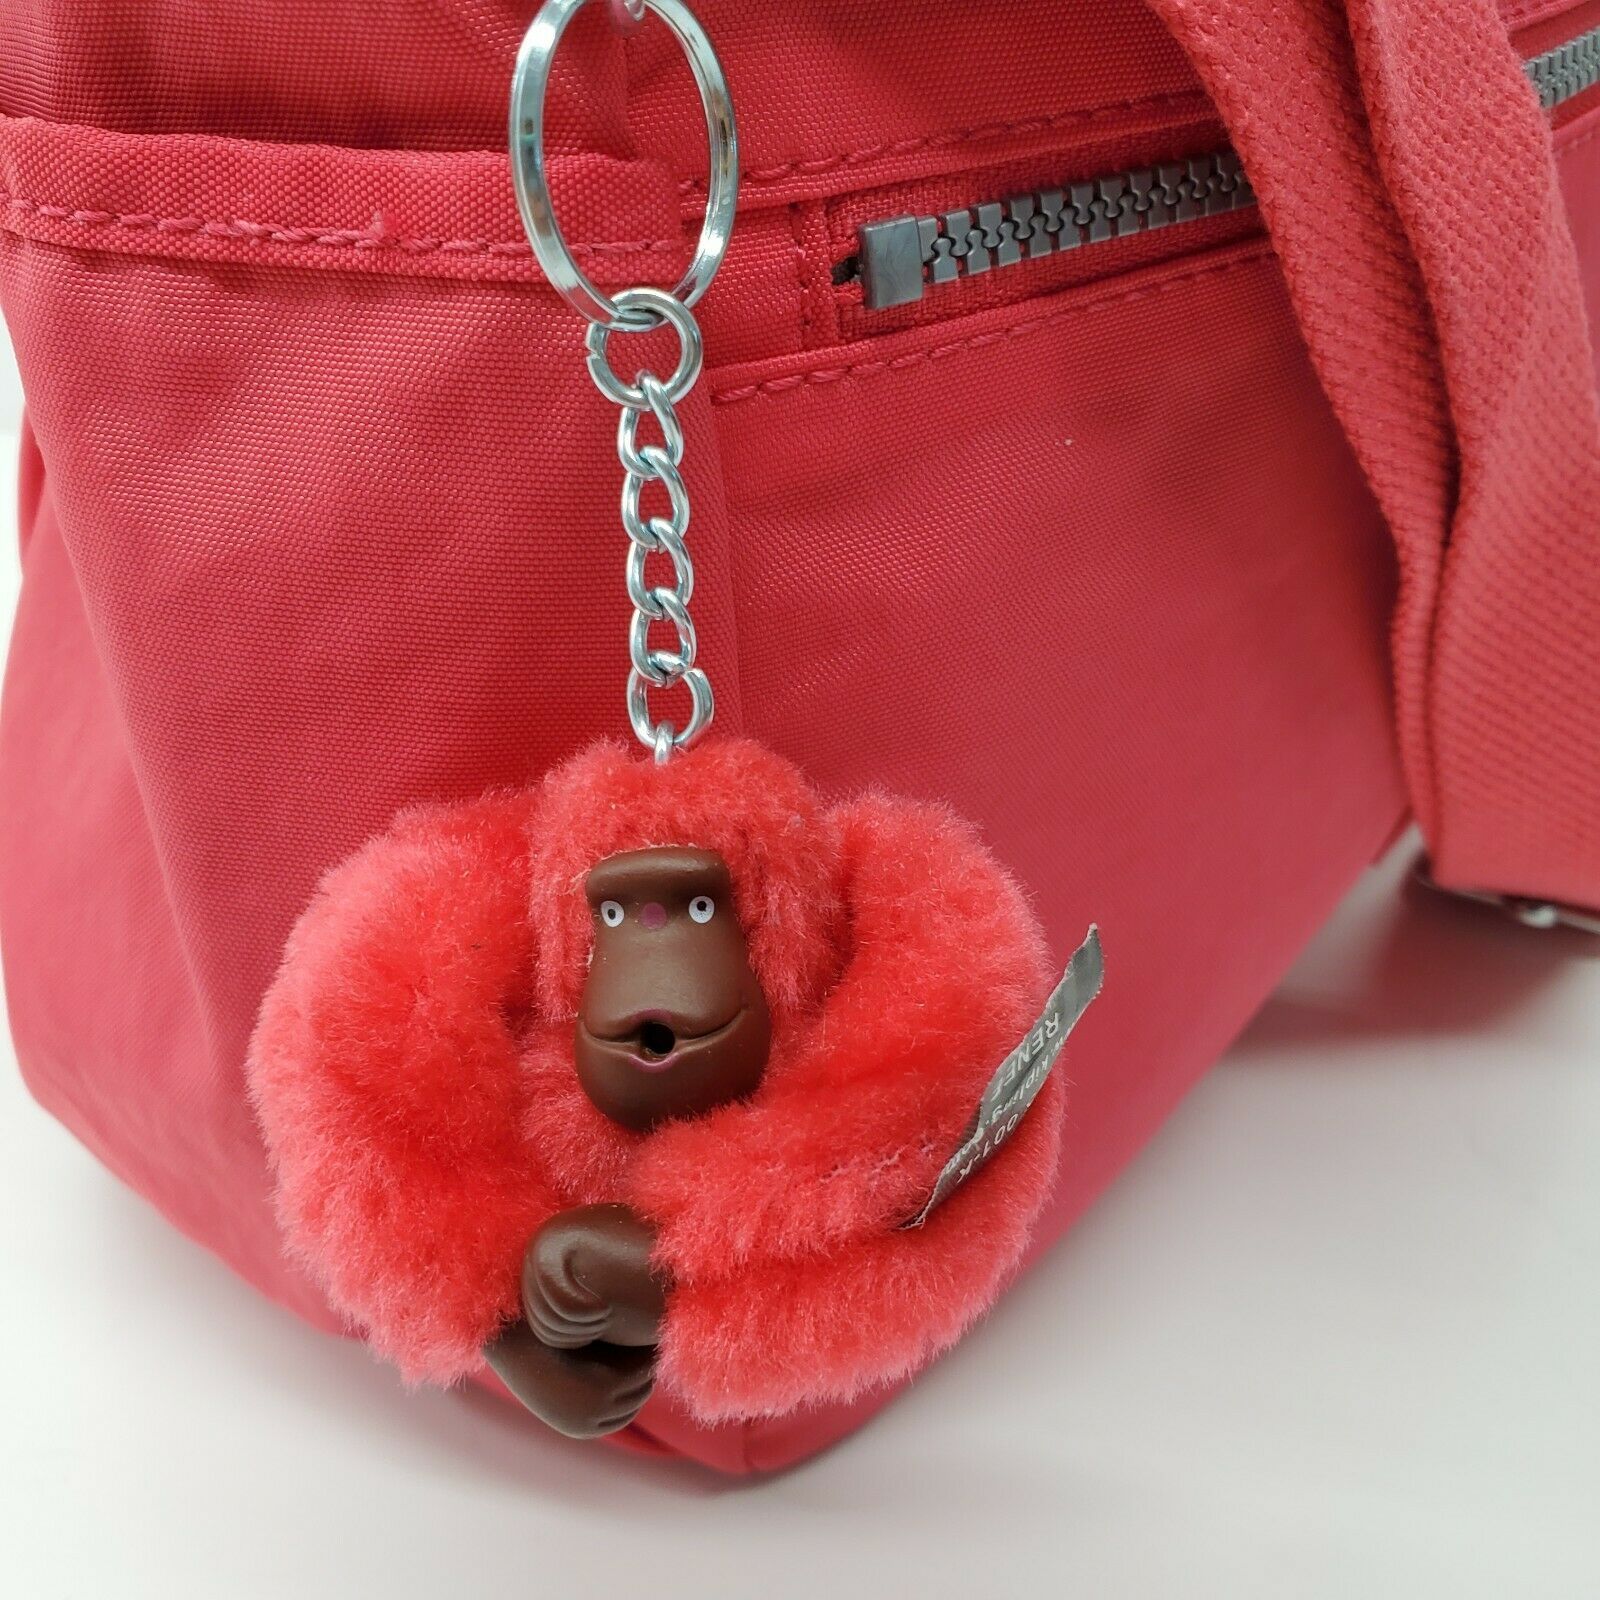 Kipling Red Nylon Cross Body Shoulder Bag Purse Monkey Renee - Women's ...